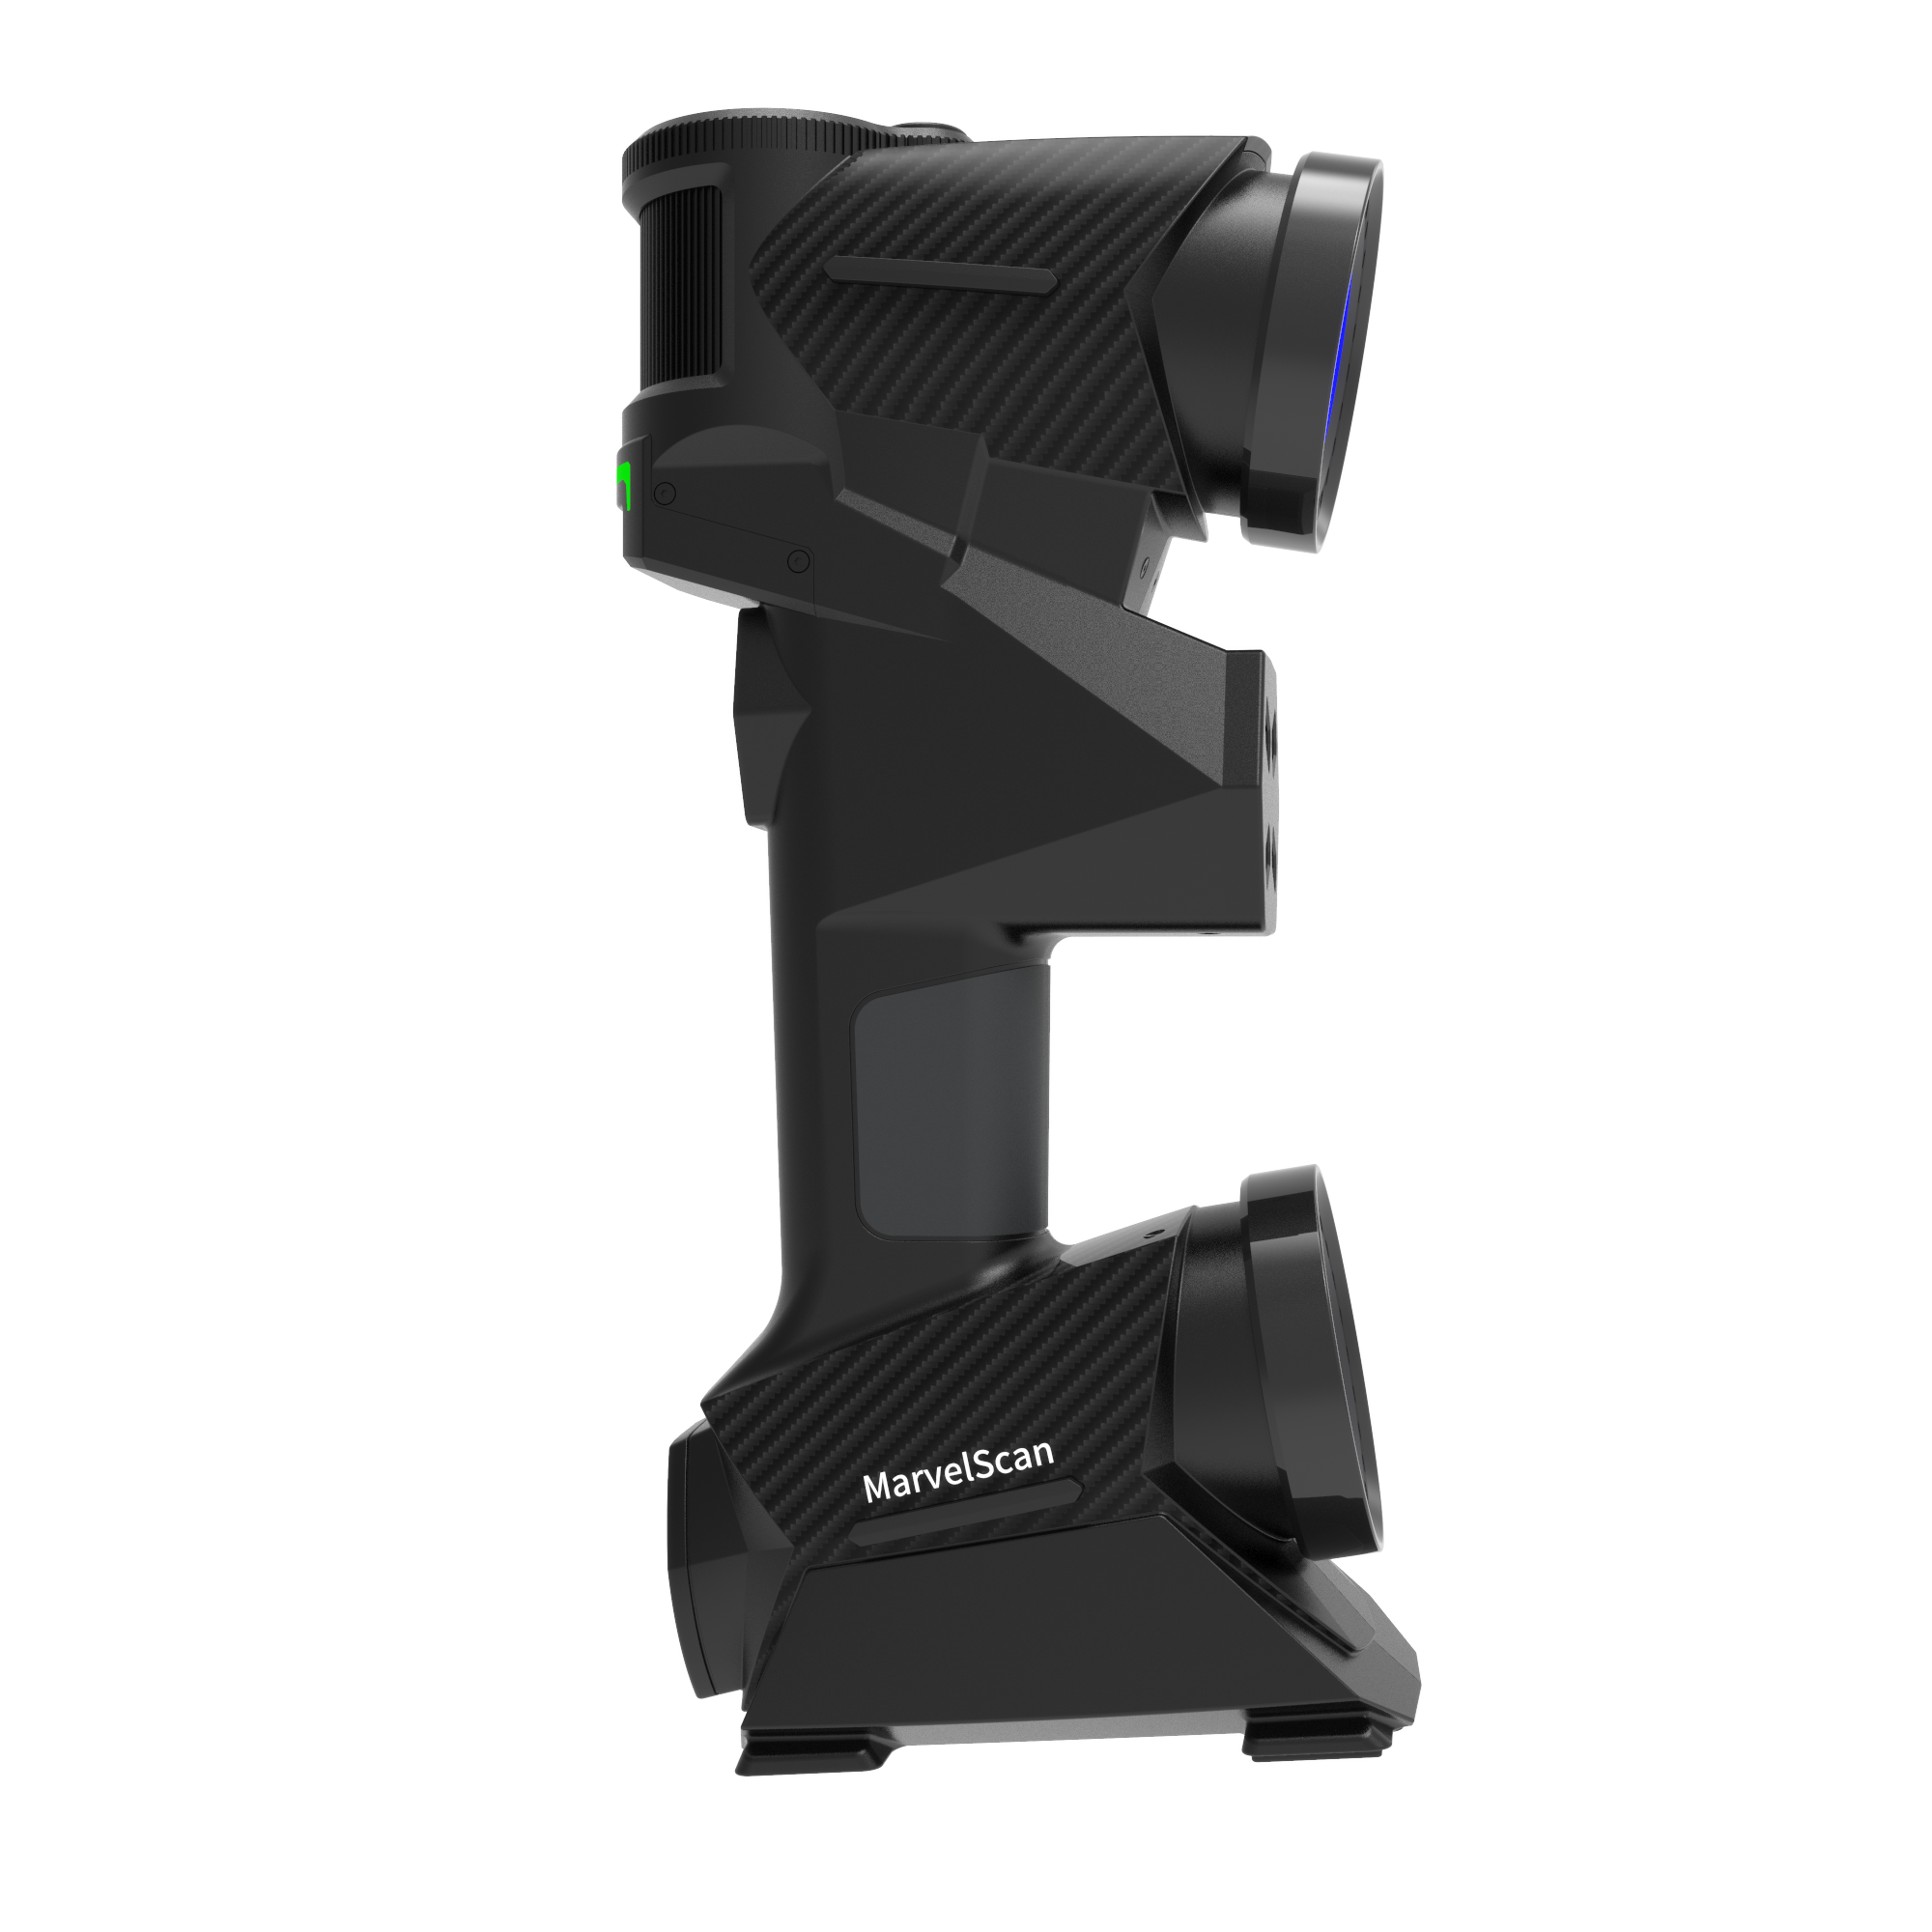 MarvelScan Tracker Free Marker Free Metrology-grade Handheld 3D Laser Scanner